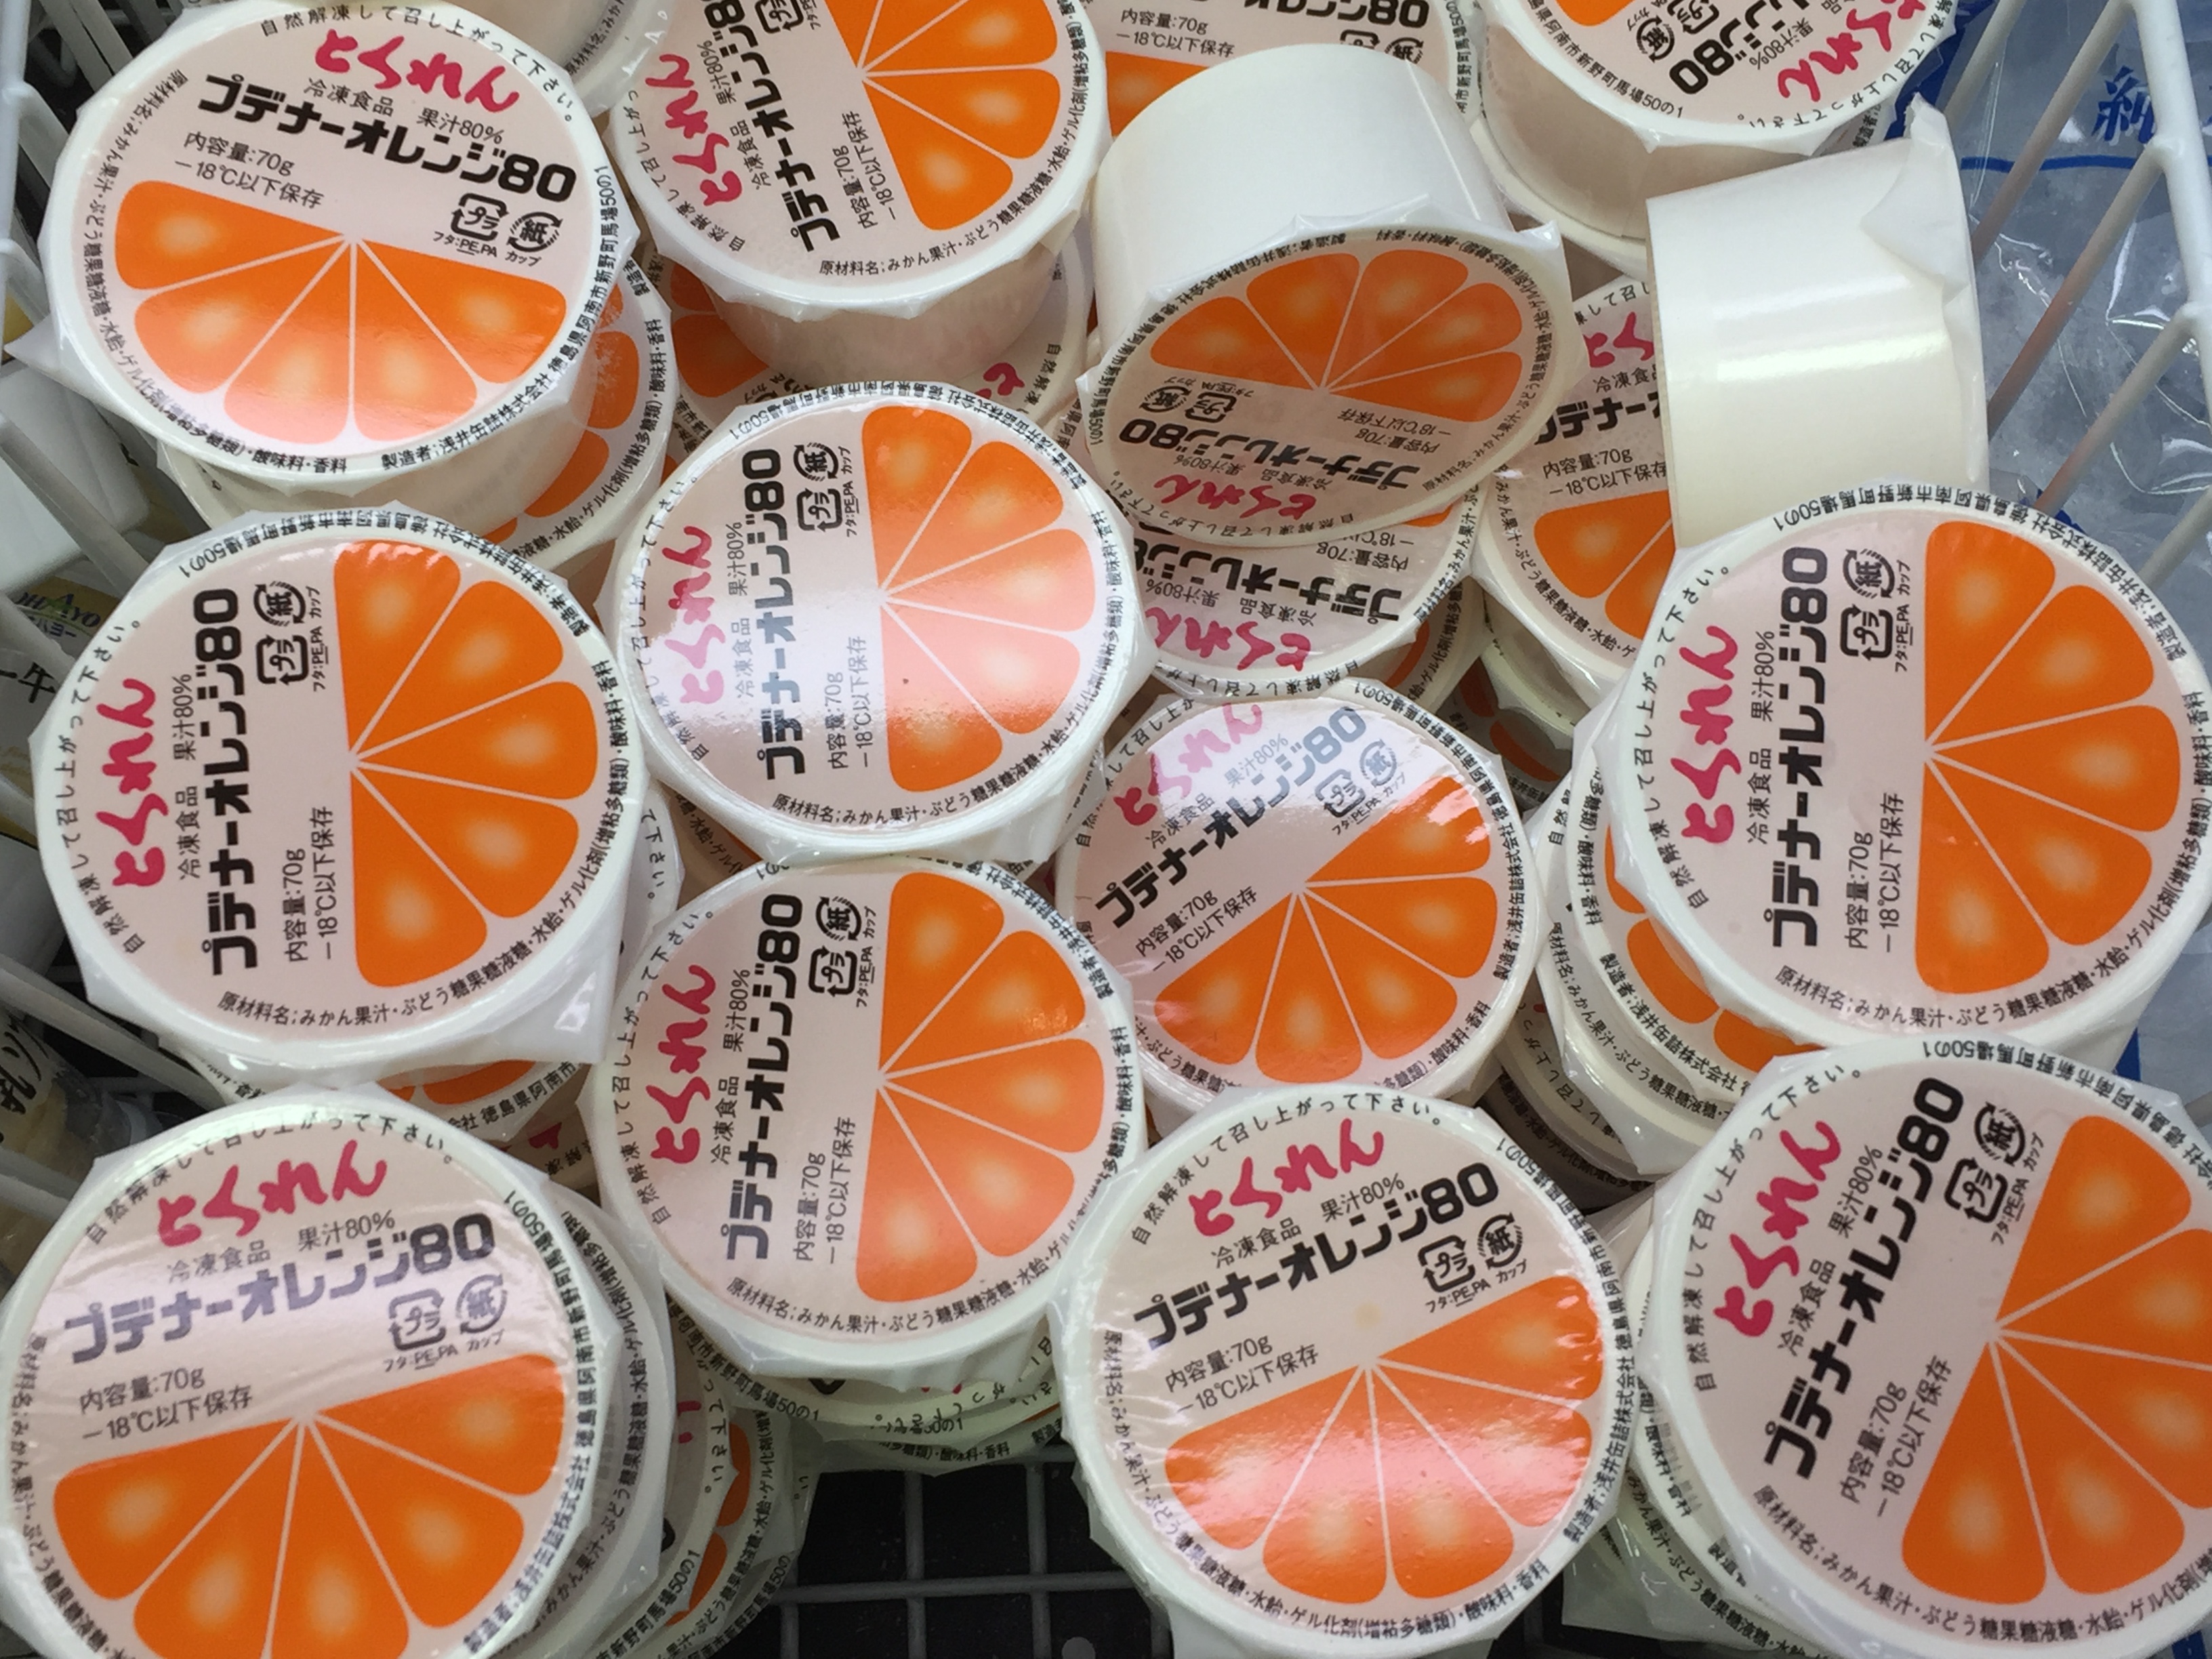 神戸っ子御用達 とくれん ゼリーを大丸須磨店で購入 食べてみた とくれん 神戸ルール とくれんゼリー プデナーオレンジ80 給食デザート 東灘ジャーナル